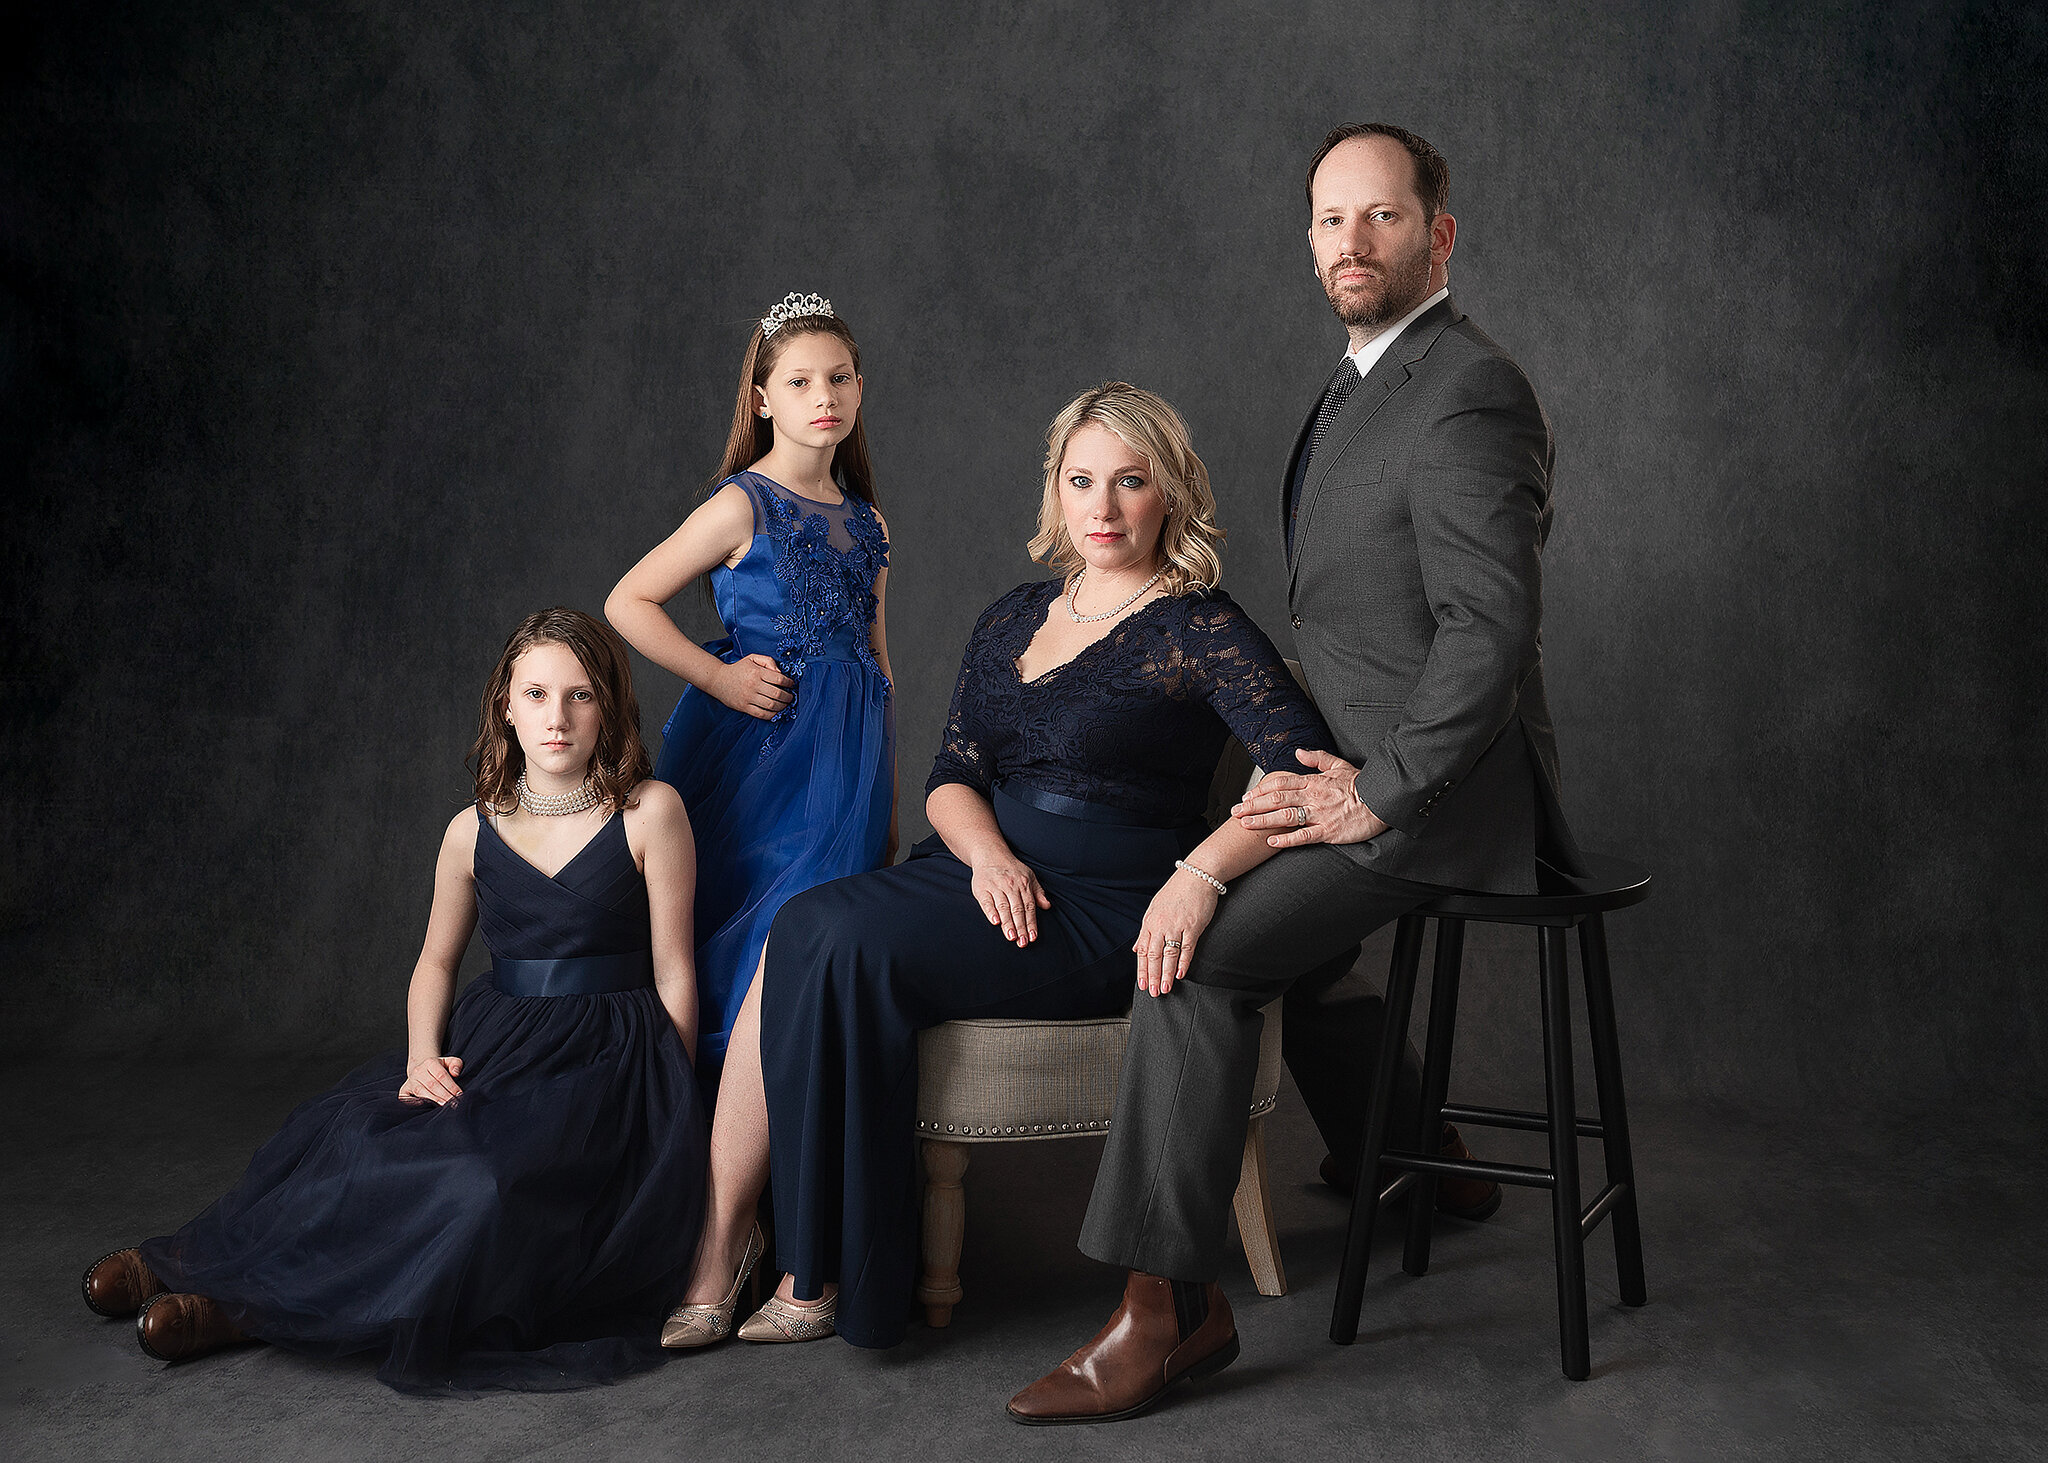 unique family portraits, best St. Cloud MN family photographers